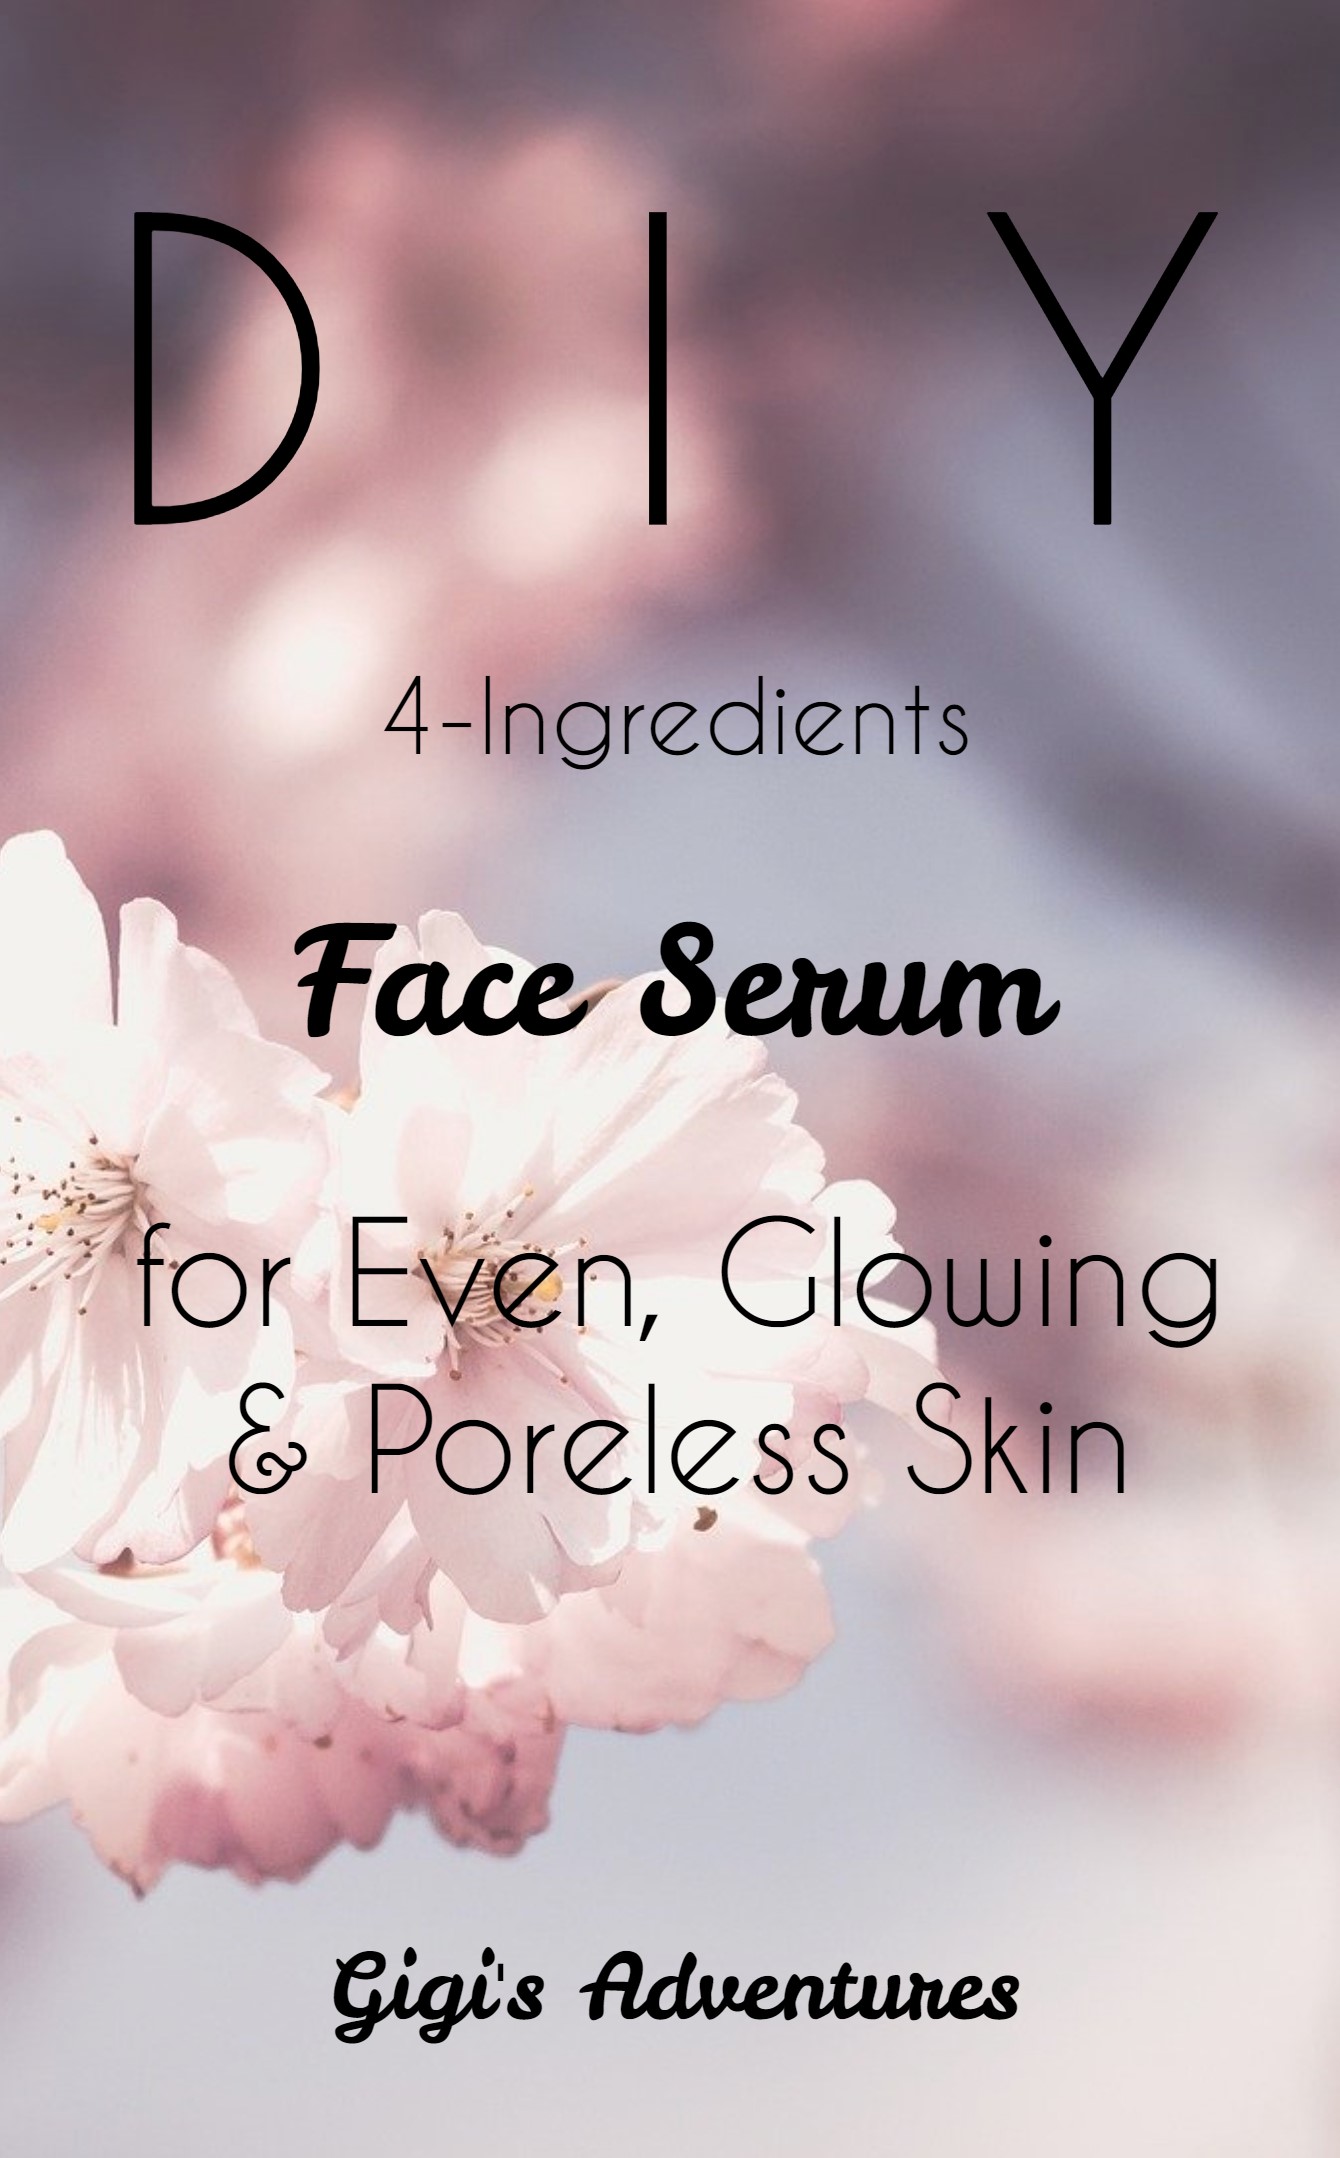 DIY 4-Ingredients Face Serum for Even, Glowing & Poreless Skin